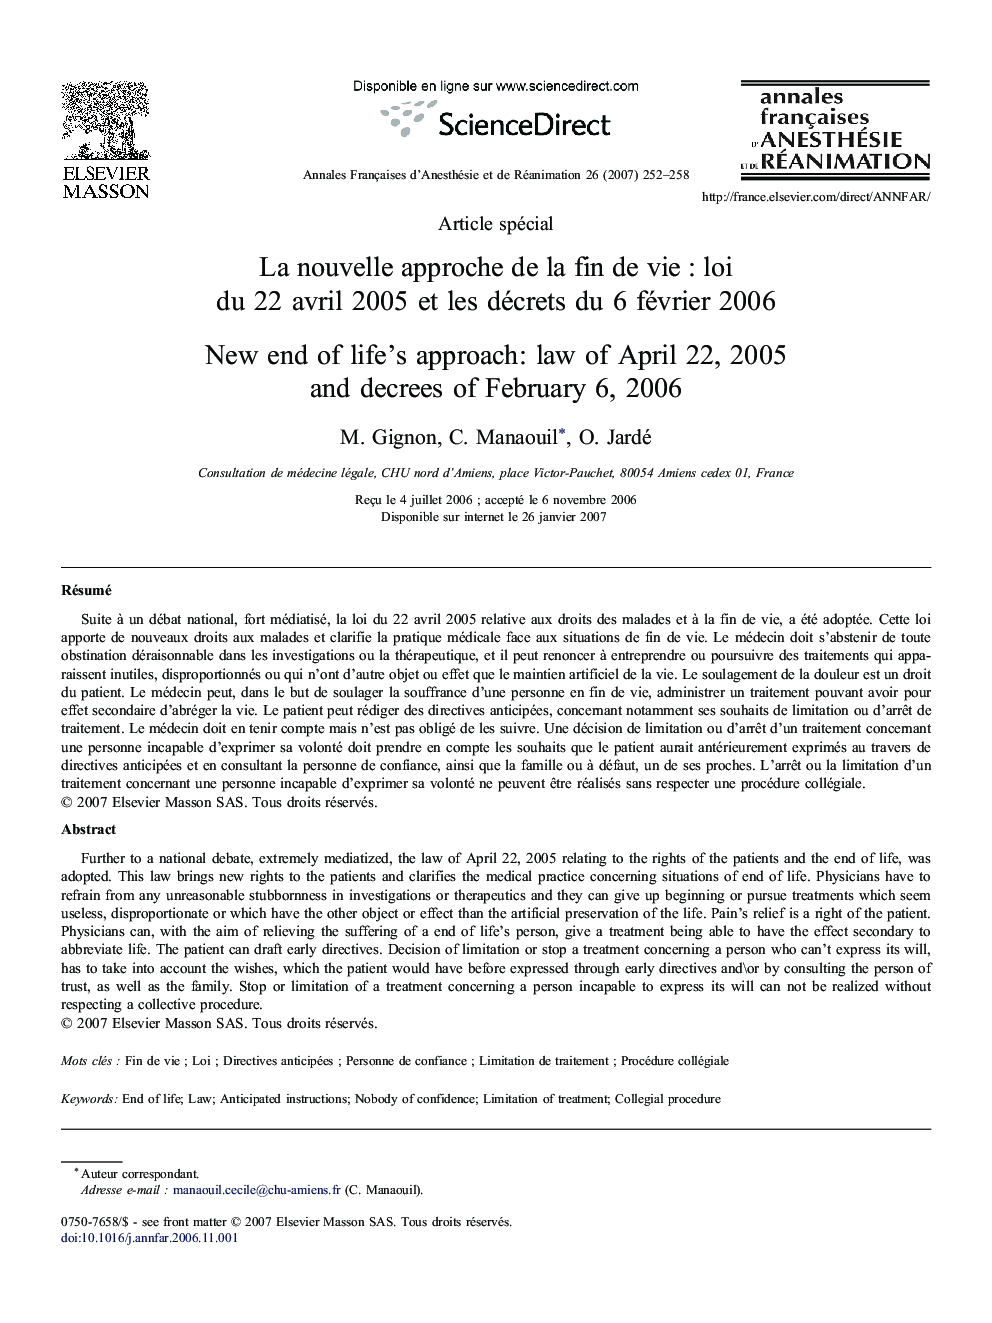 La nouvelle approche de la fin de vie : loi du 22 avril 2005 et les décrets du 6 février 2006